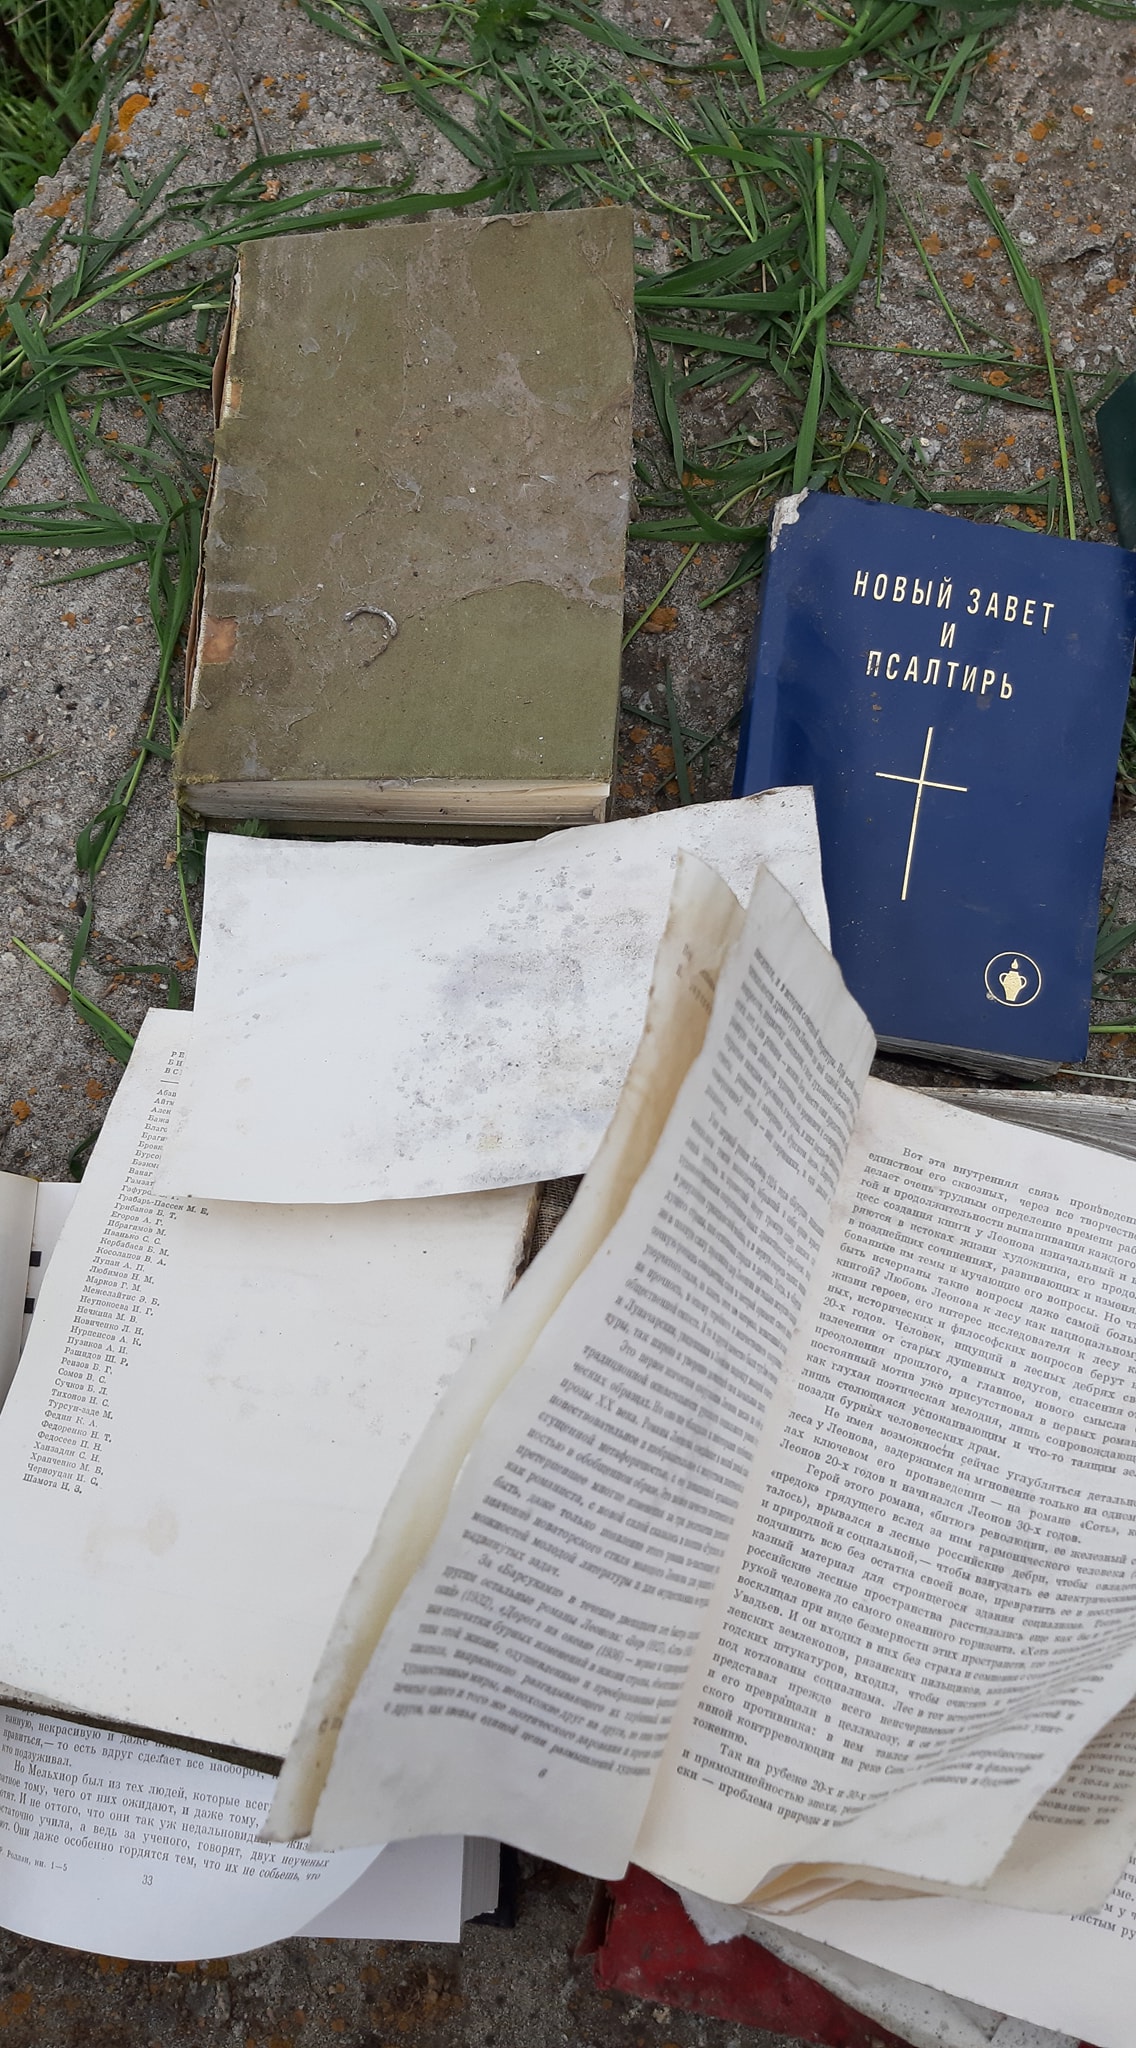 Новый завет и Псалтырь: жительнице Акимовки под дом подбросили гору книг (ФОТО)